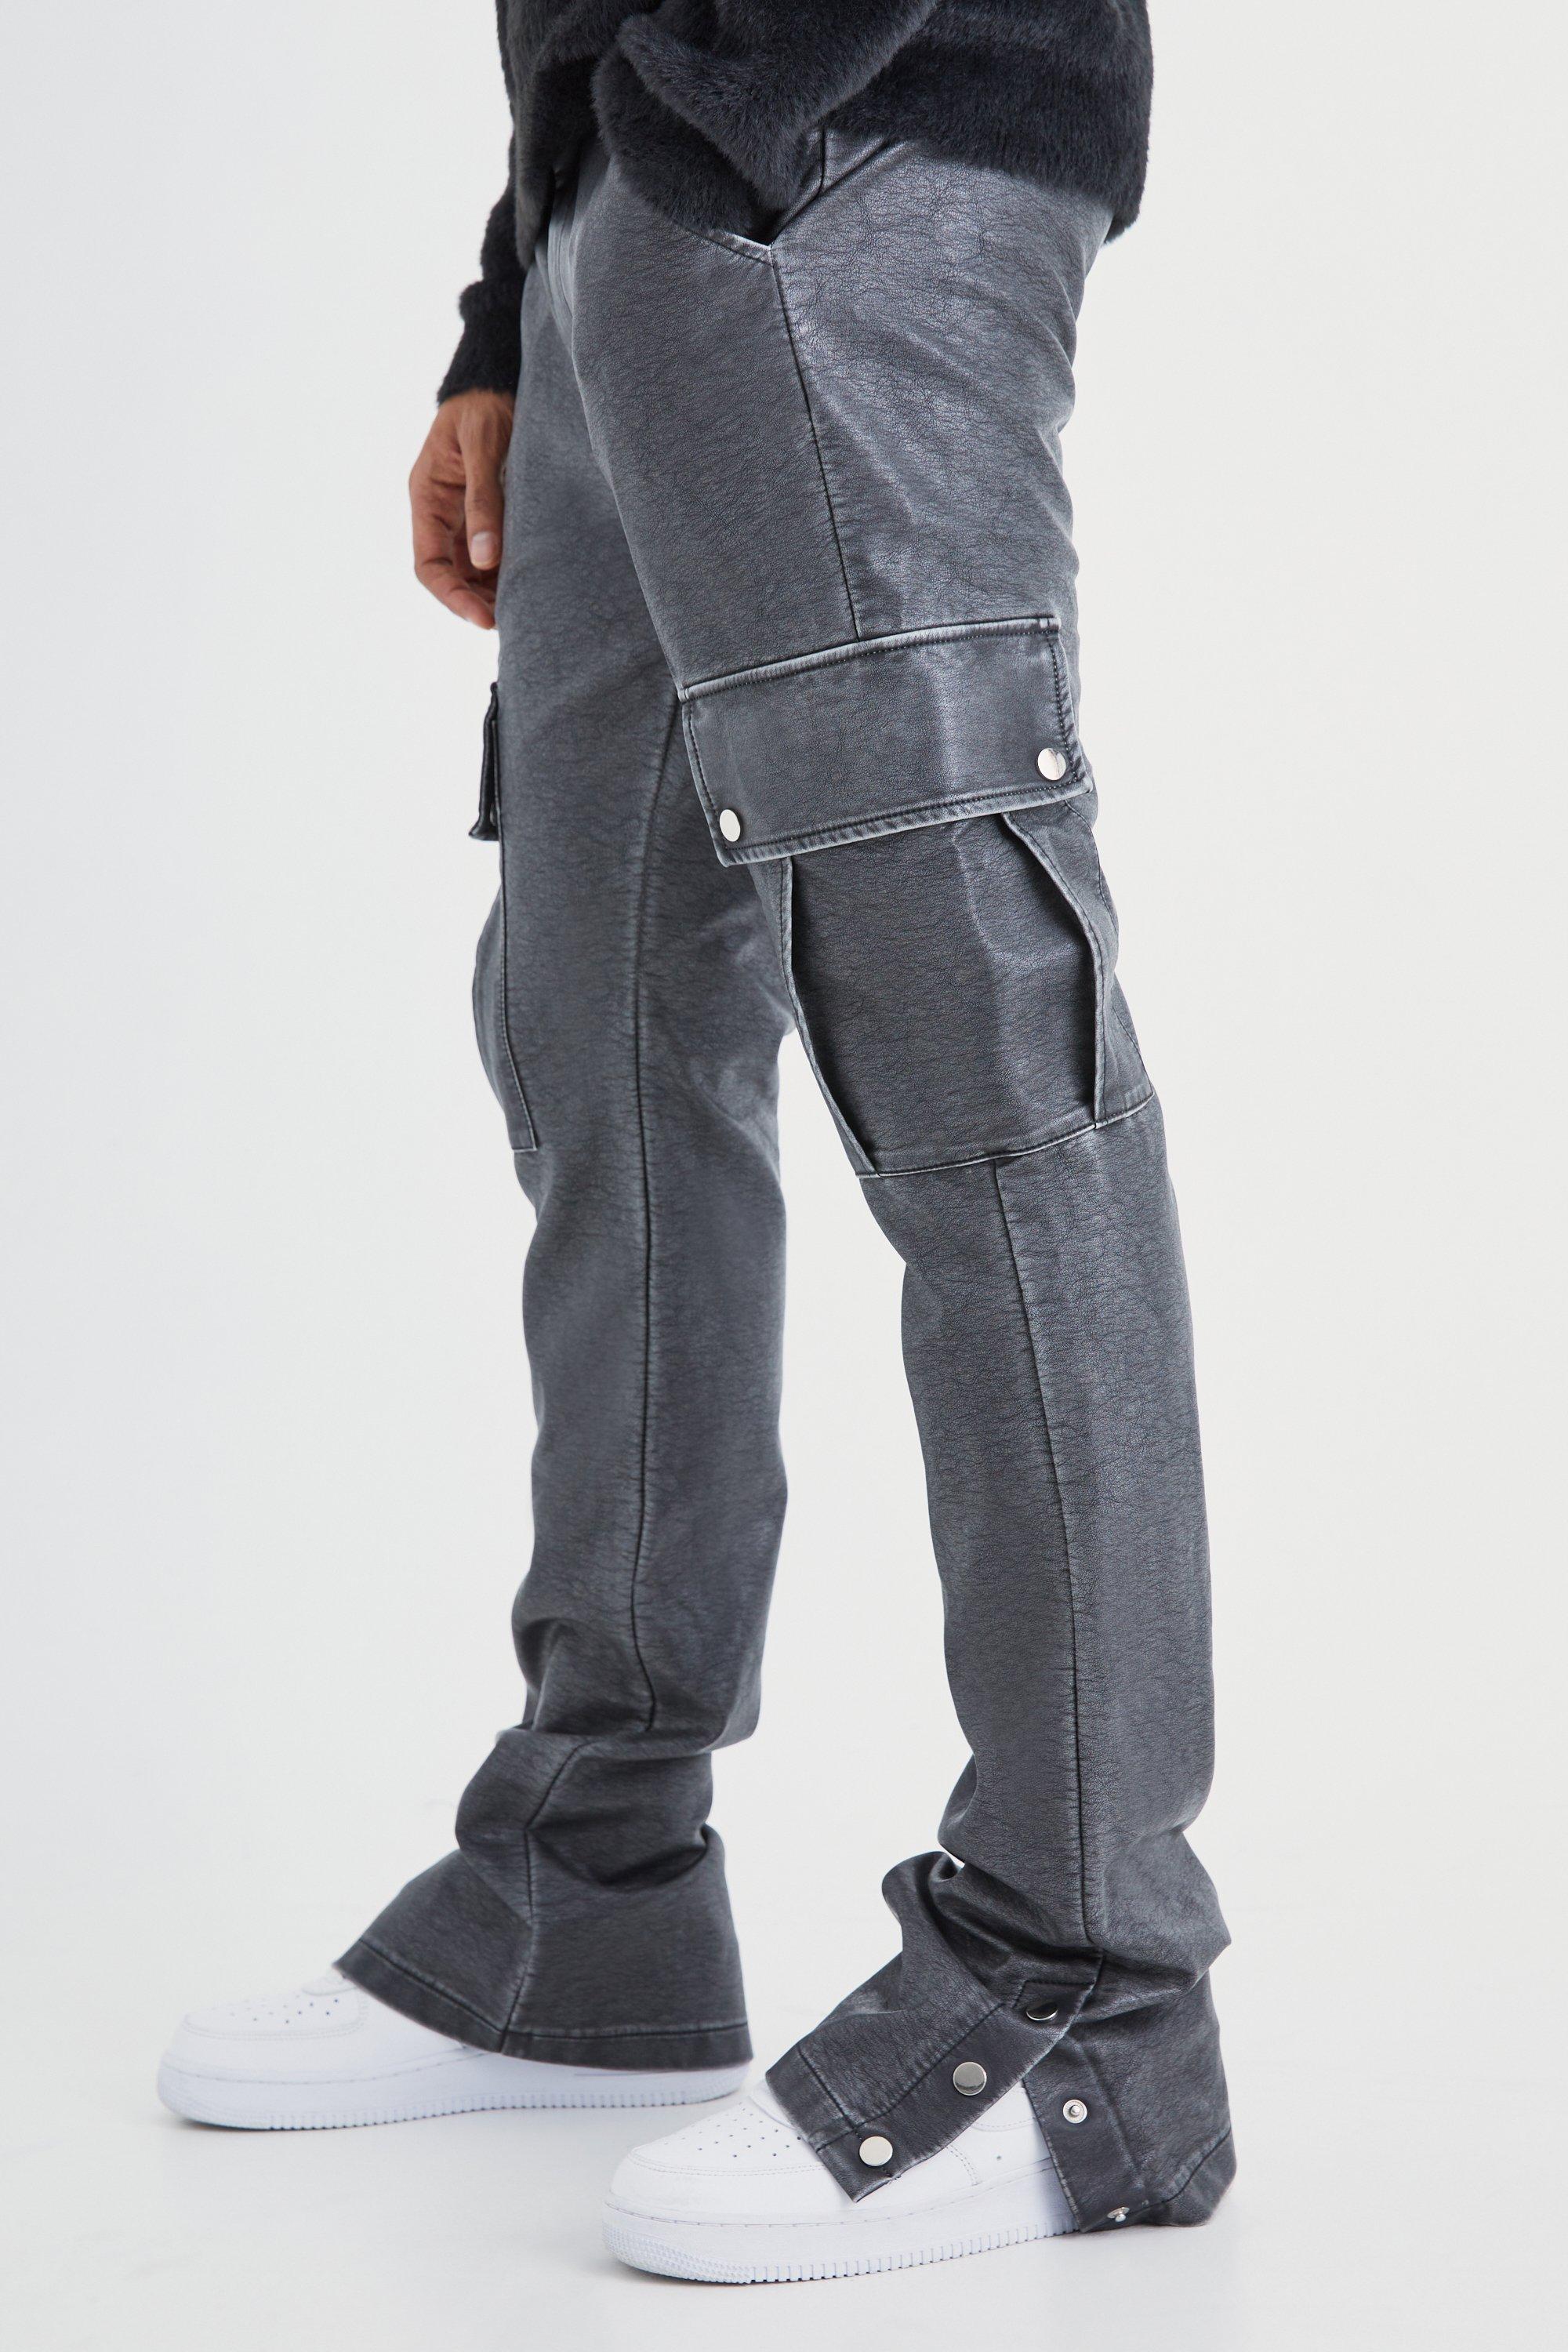 Image of Pantaloni Cargo Slim Fit in PU slavato con bottoni a pressione sul fondo, Grigio